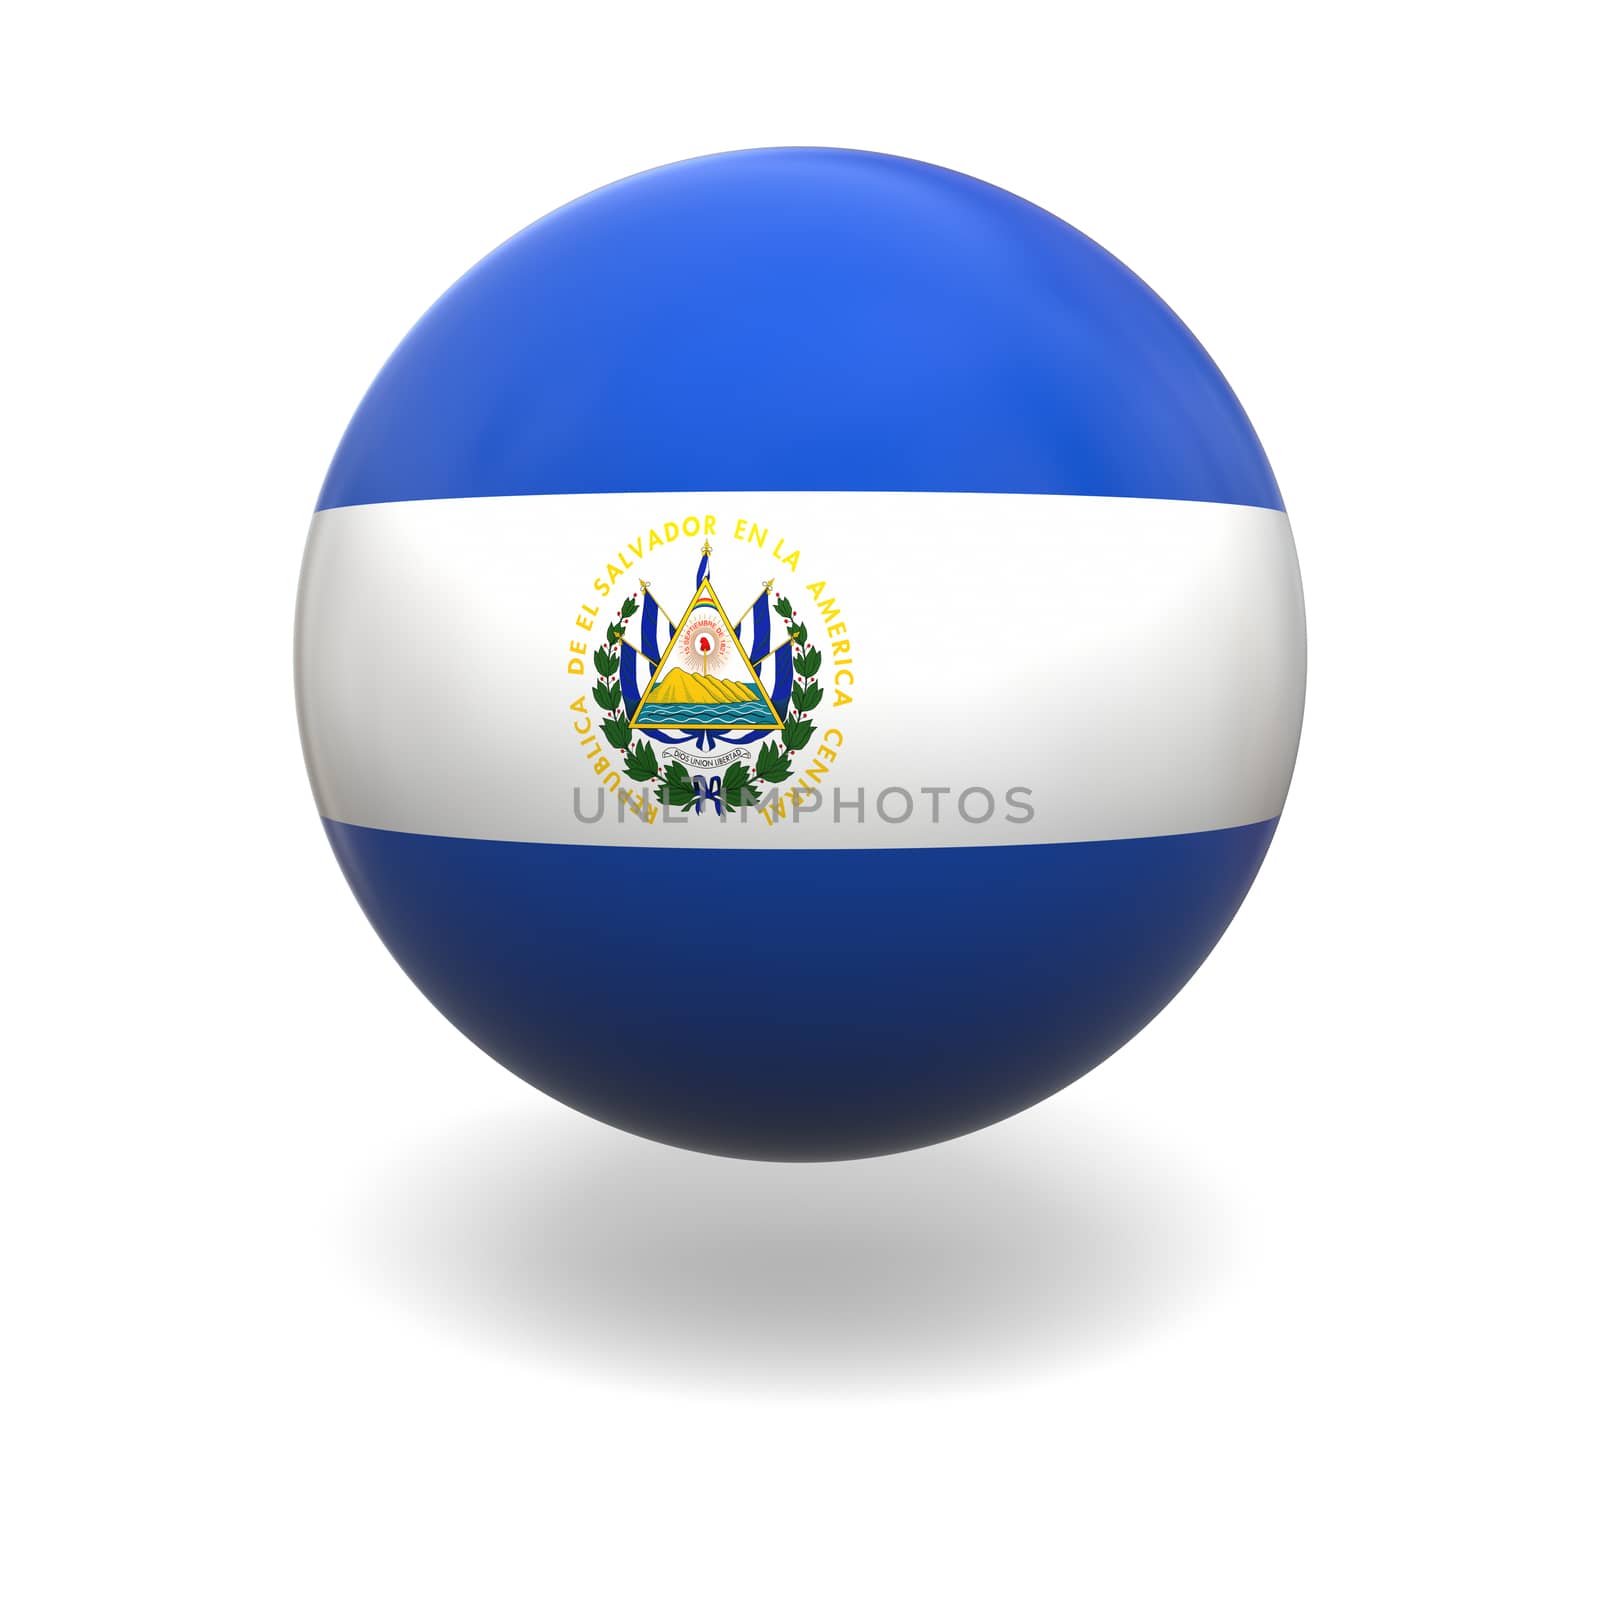 El Salvador flag by Harvepino